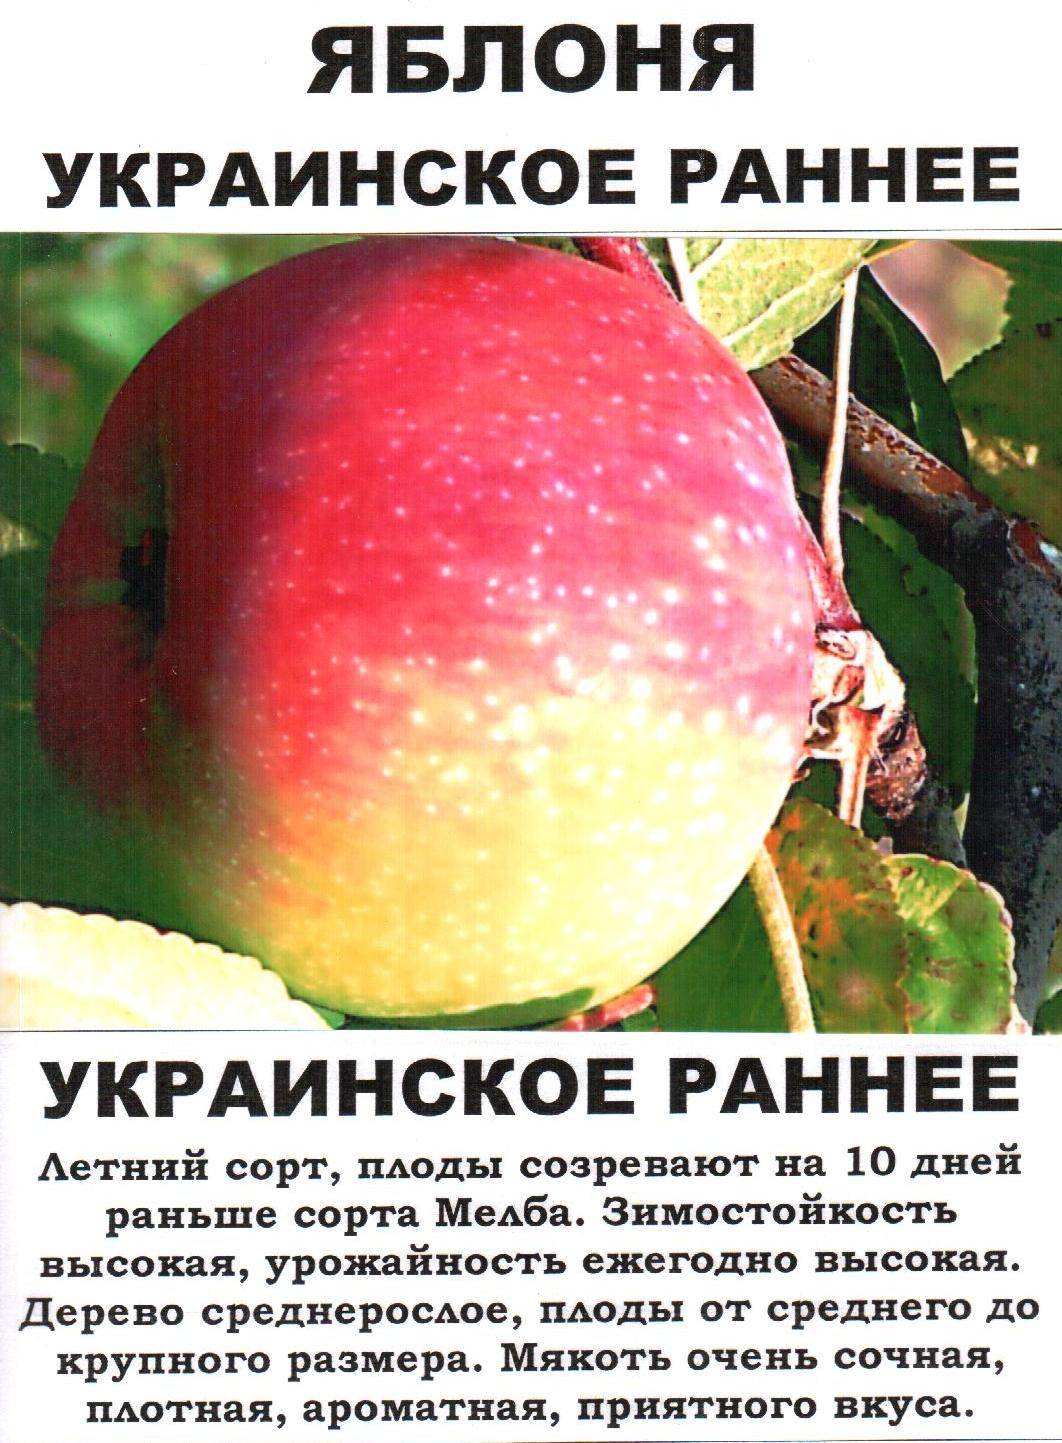 Яблоня красное раннее описание сорта фото. Яблоня украинская ранняя. Описание сортов яблок. Сорт яблони украинское раннее. Ранние сорта яблок.